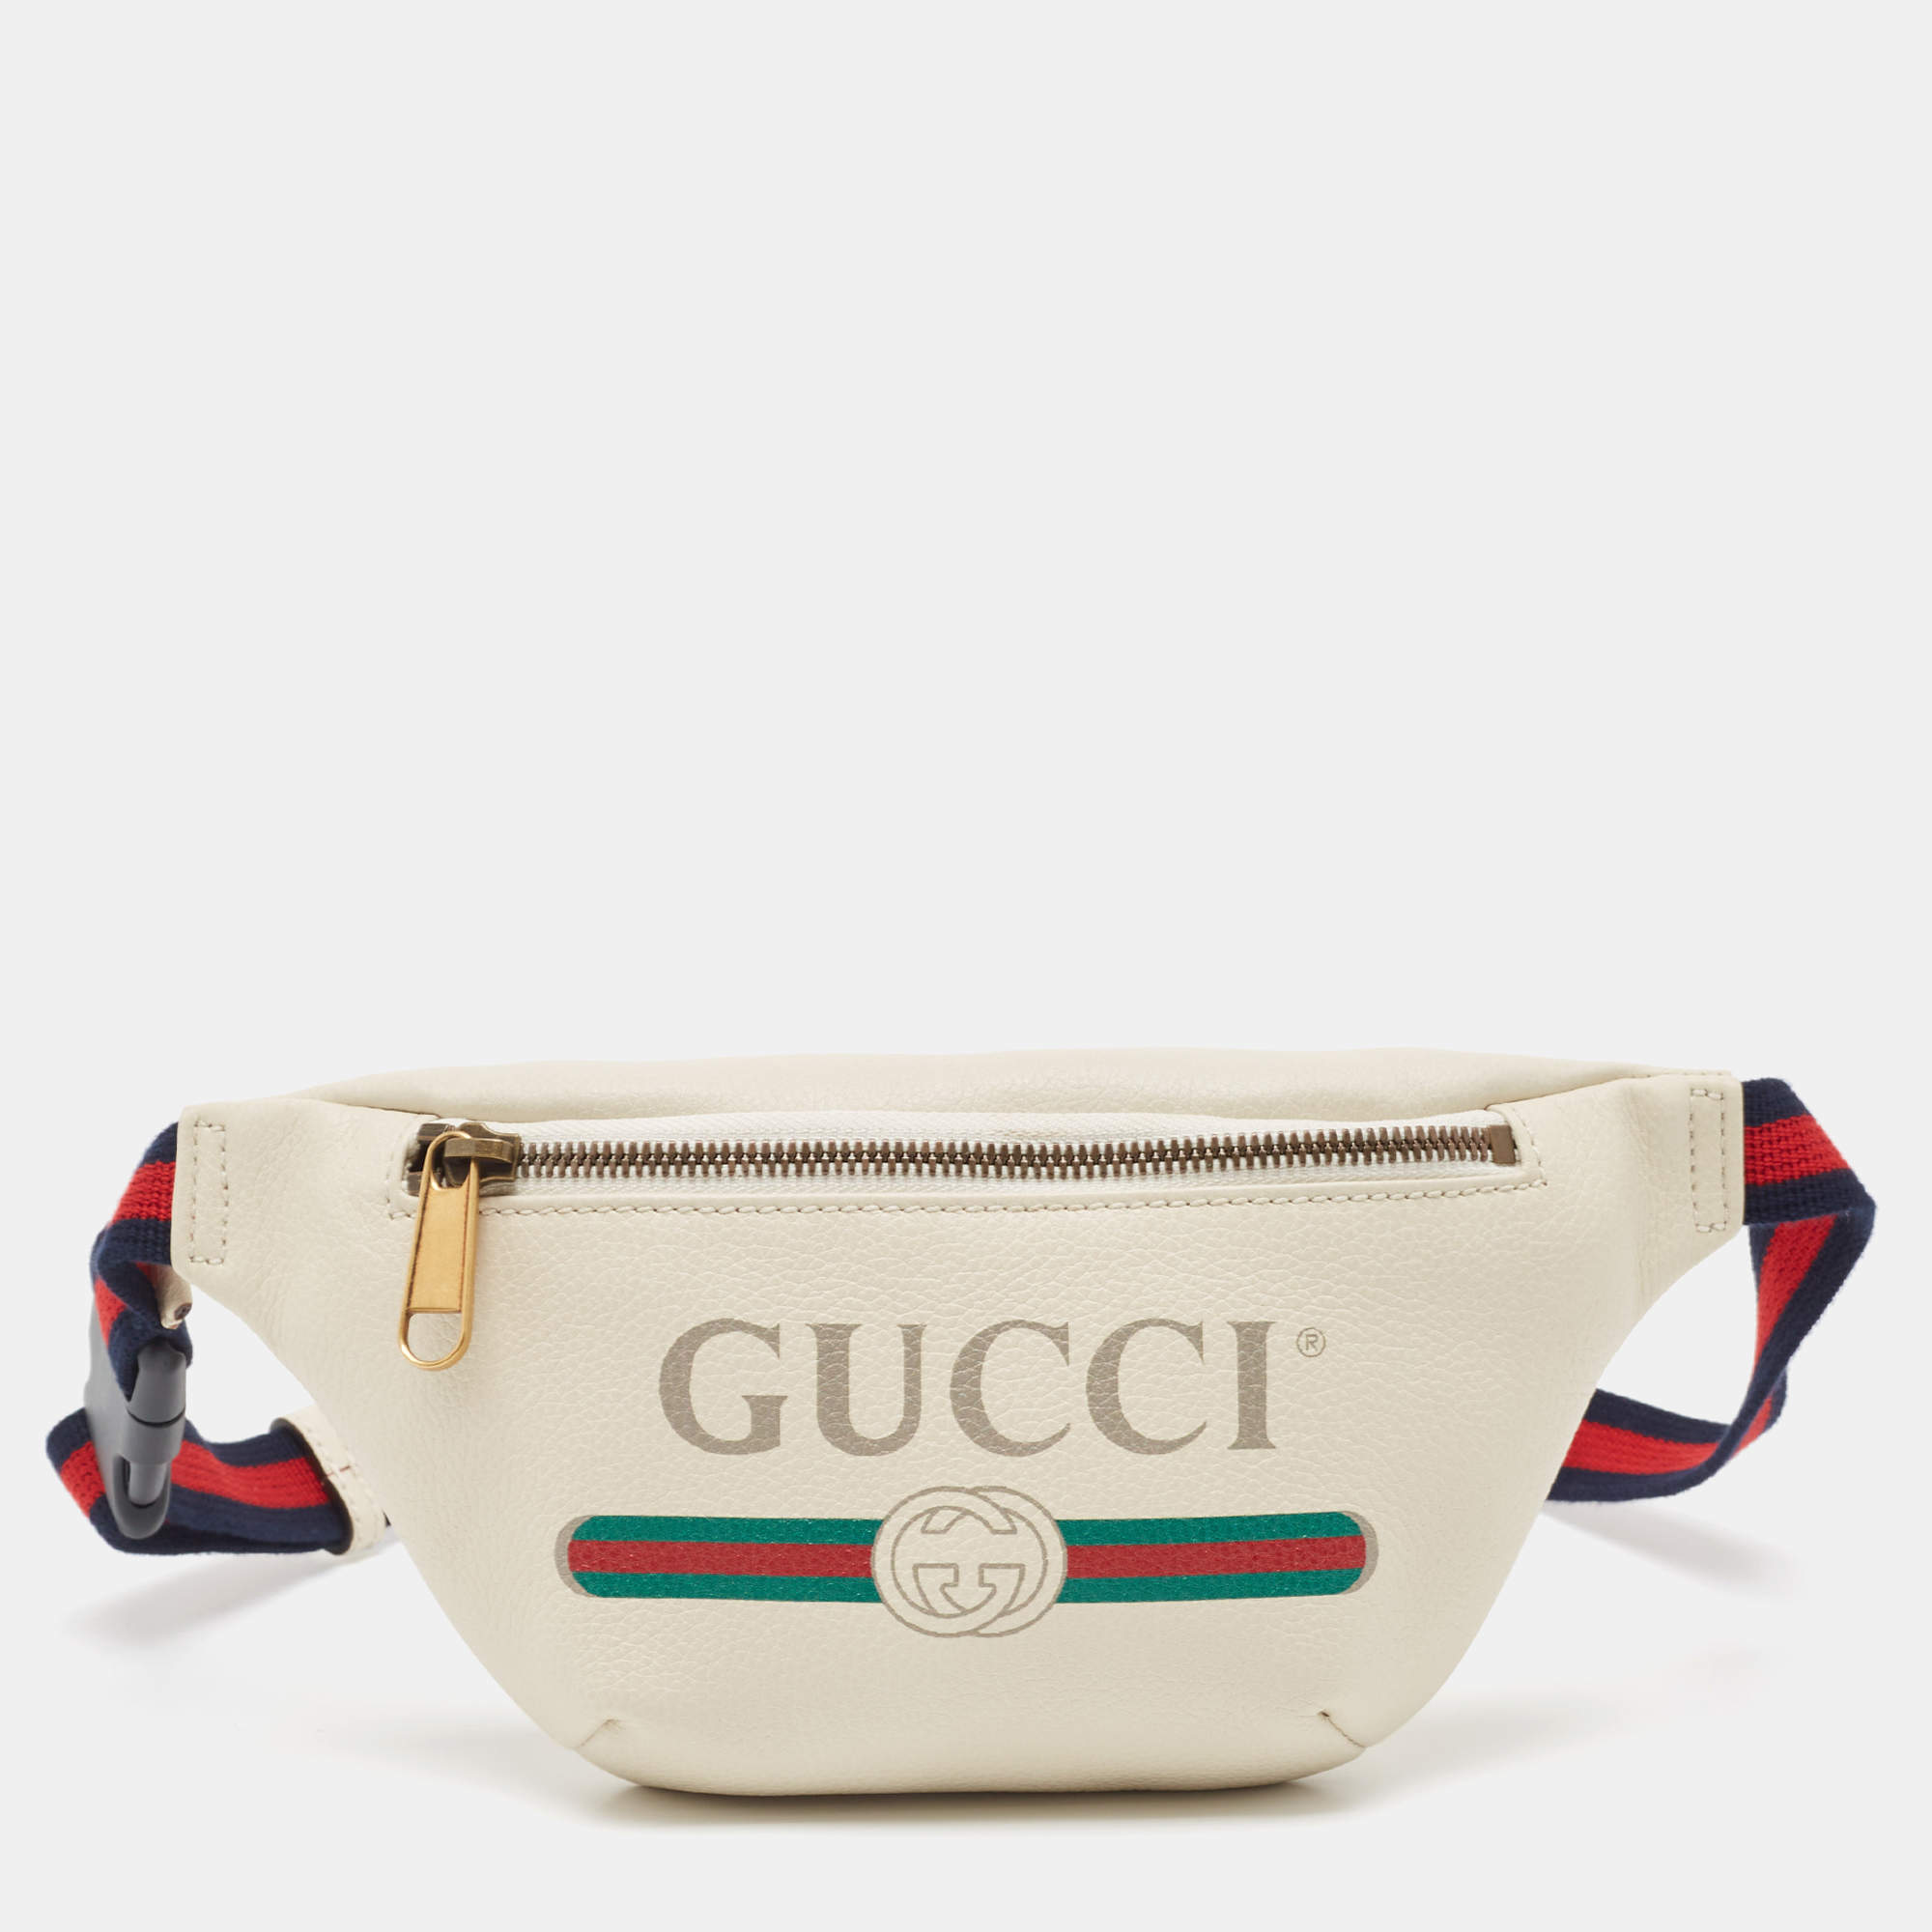 Shop Exclusive GUCCI Belt Bags for Men